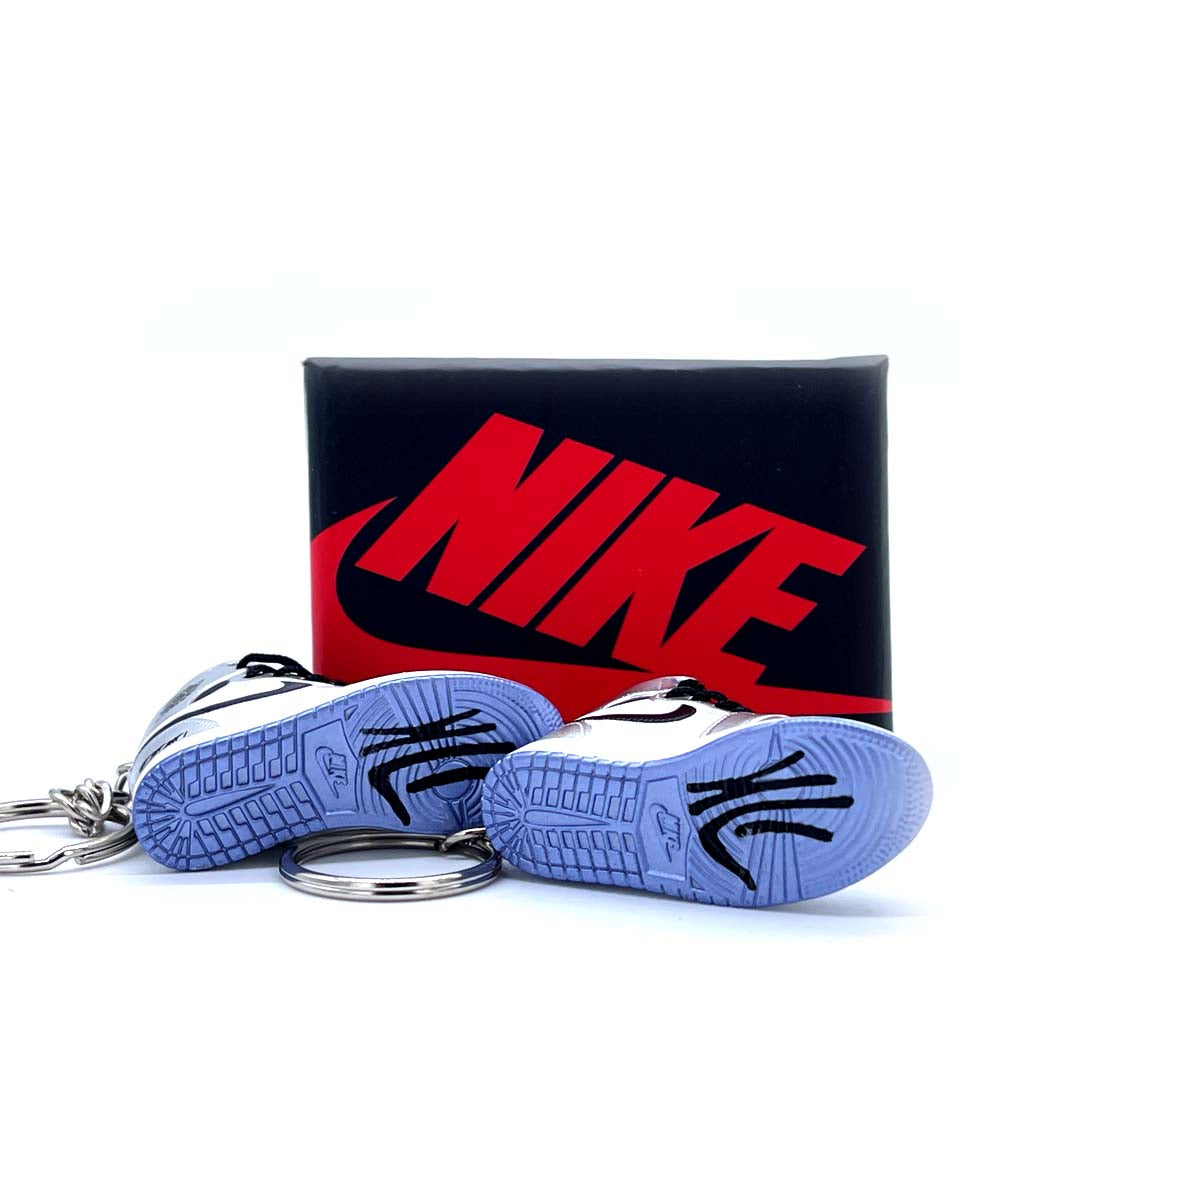 3D Sneaker Keychain- Air Jordan 1 High 'Think 16' Pair